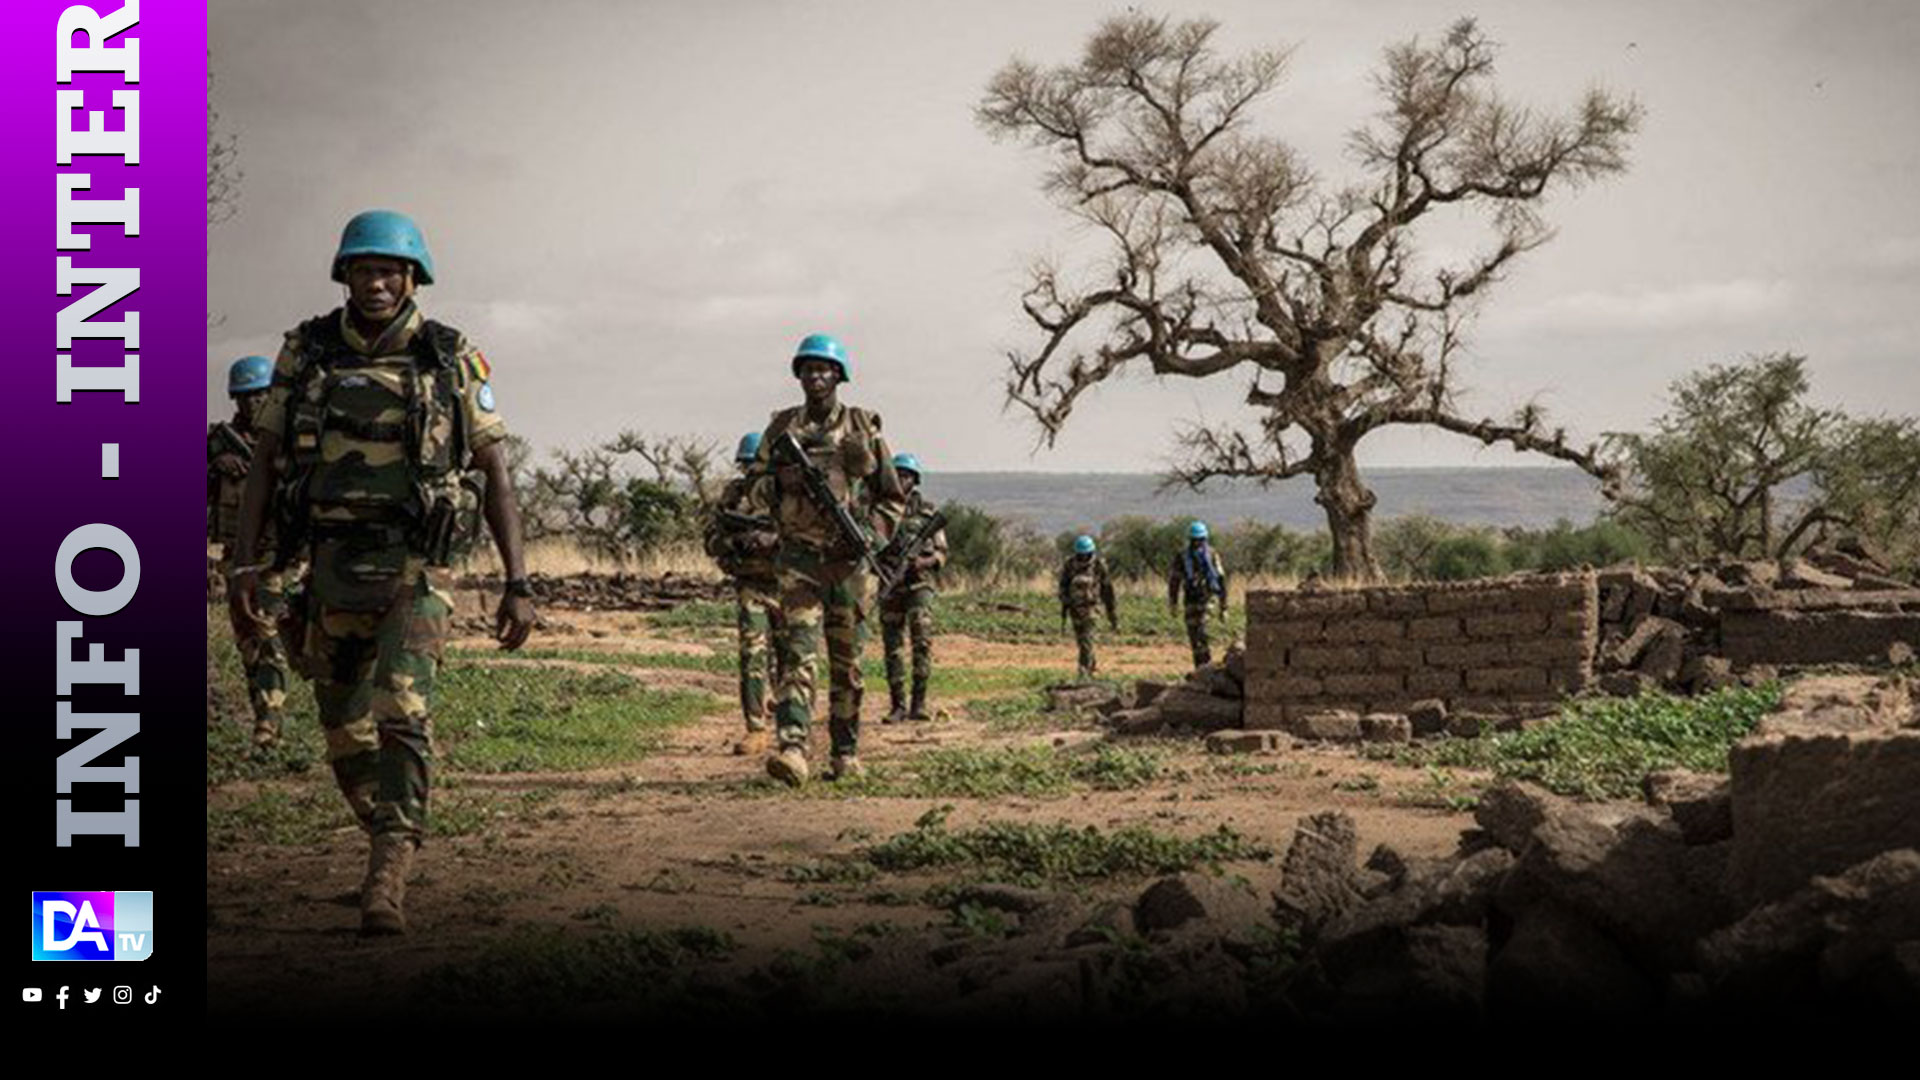 La fin de la mission de l'ONU va "nuire" aux Maliens, regrettent les Etats-Unis